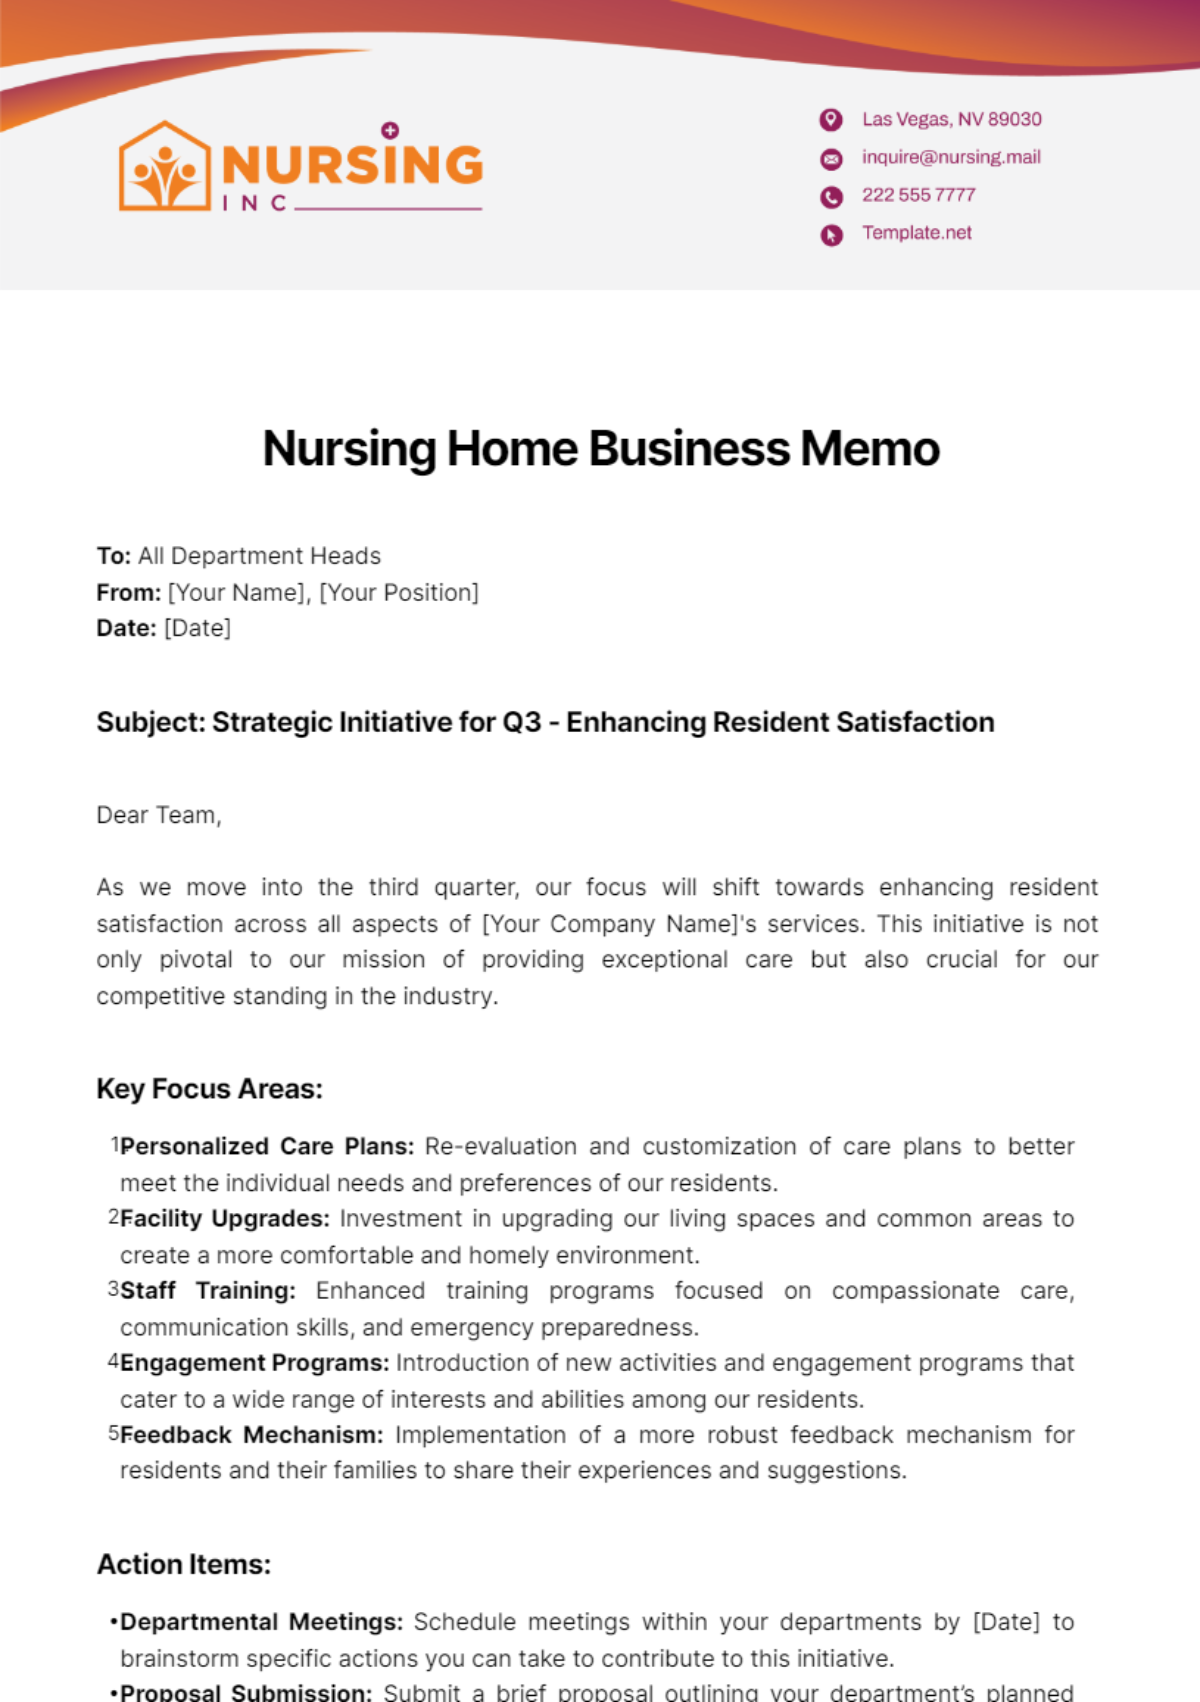 Nursing Home Business Memo Template